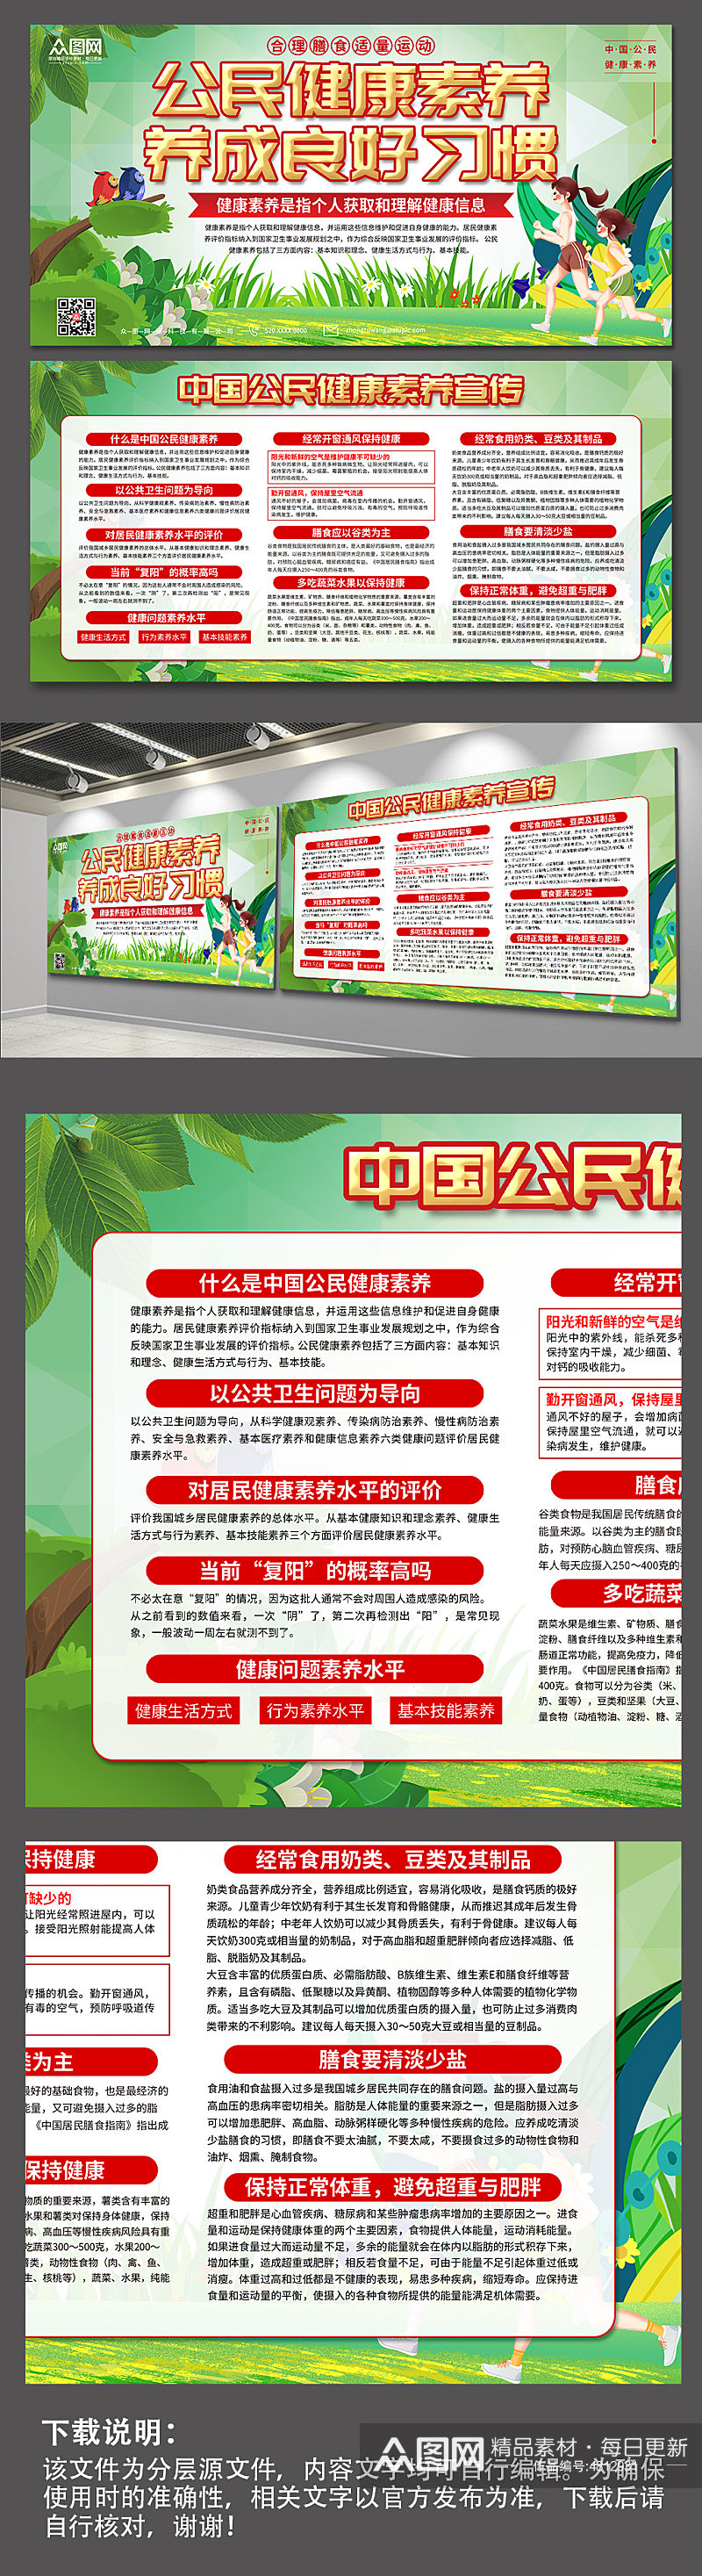 解读中国公民健康素养宣传展板素材